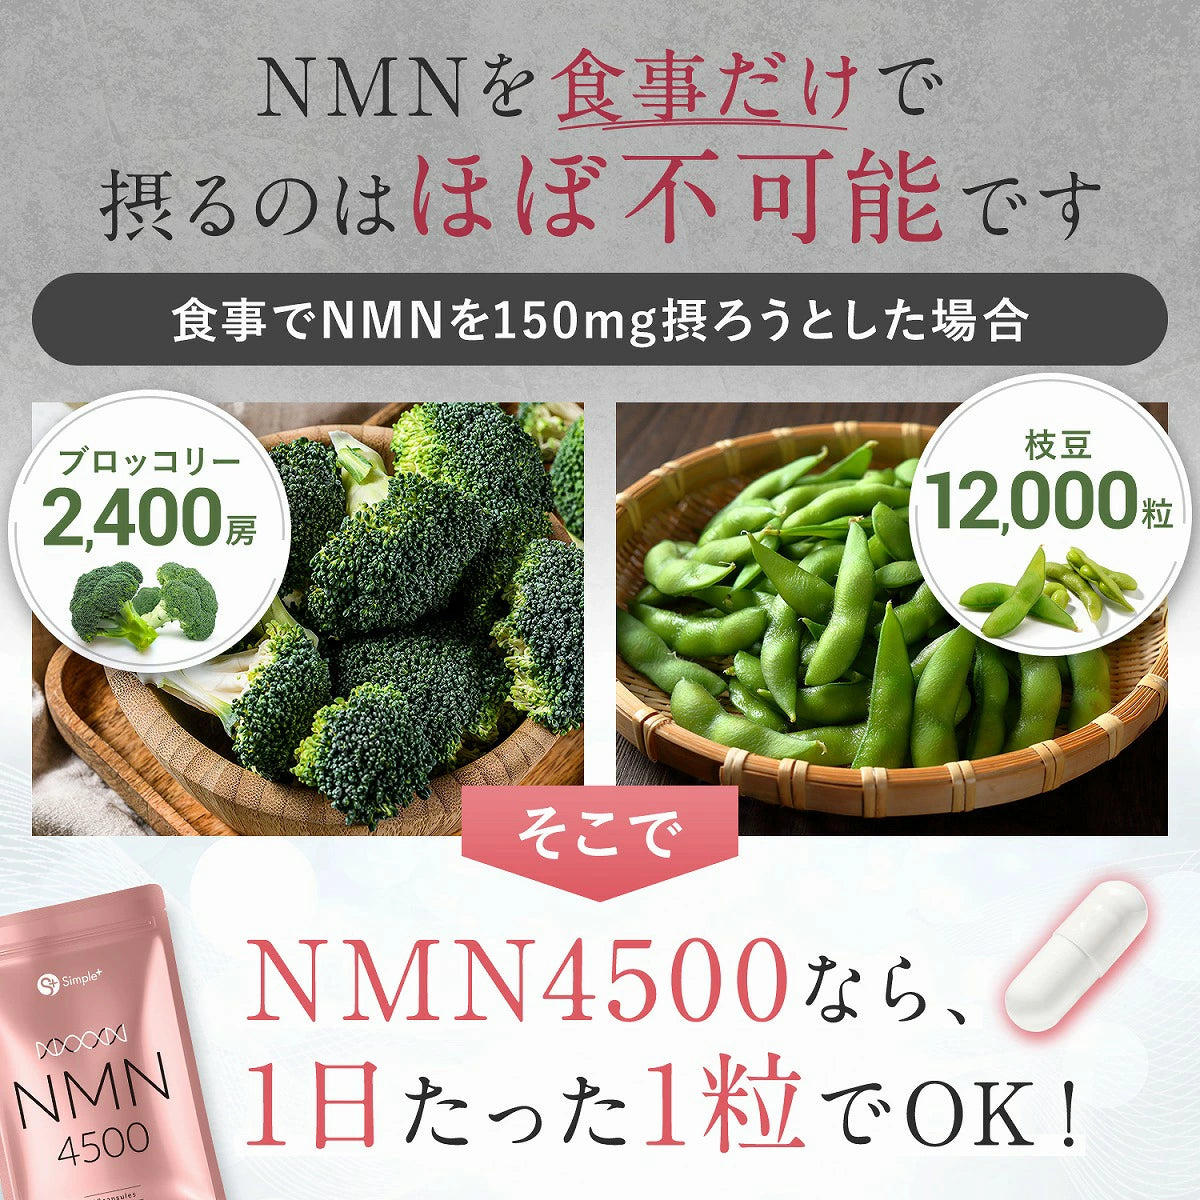 團購優惠 只售$148 NMN補充劑 日本製造 MADE IN TOKYO 純度 100% 4500mg 國產補充劑 30天日份